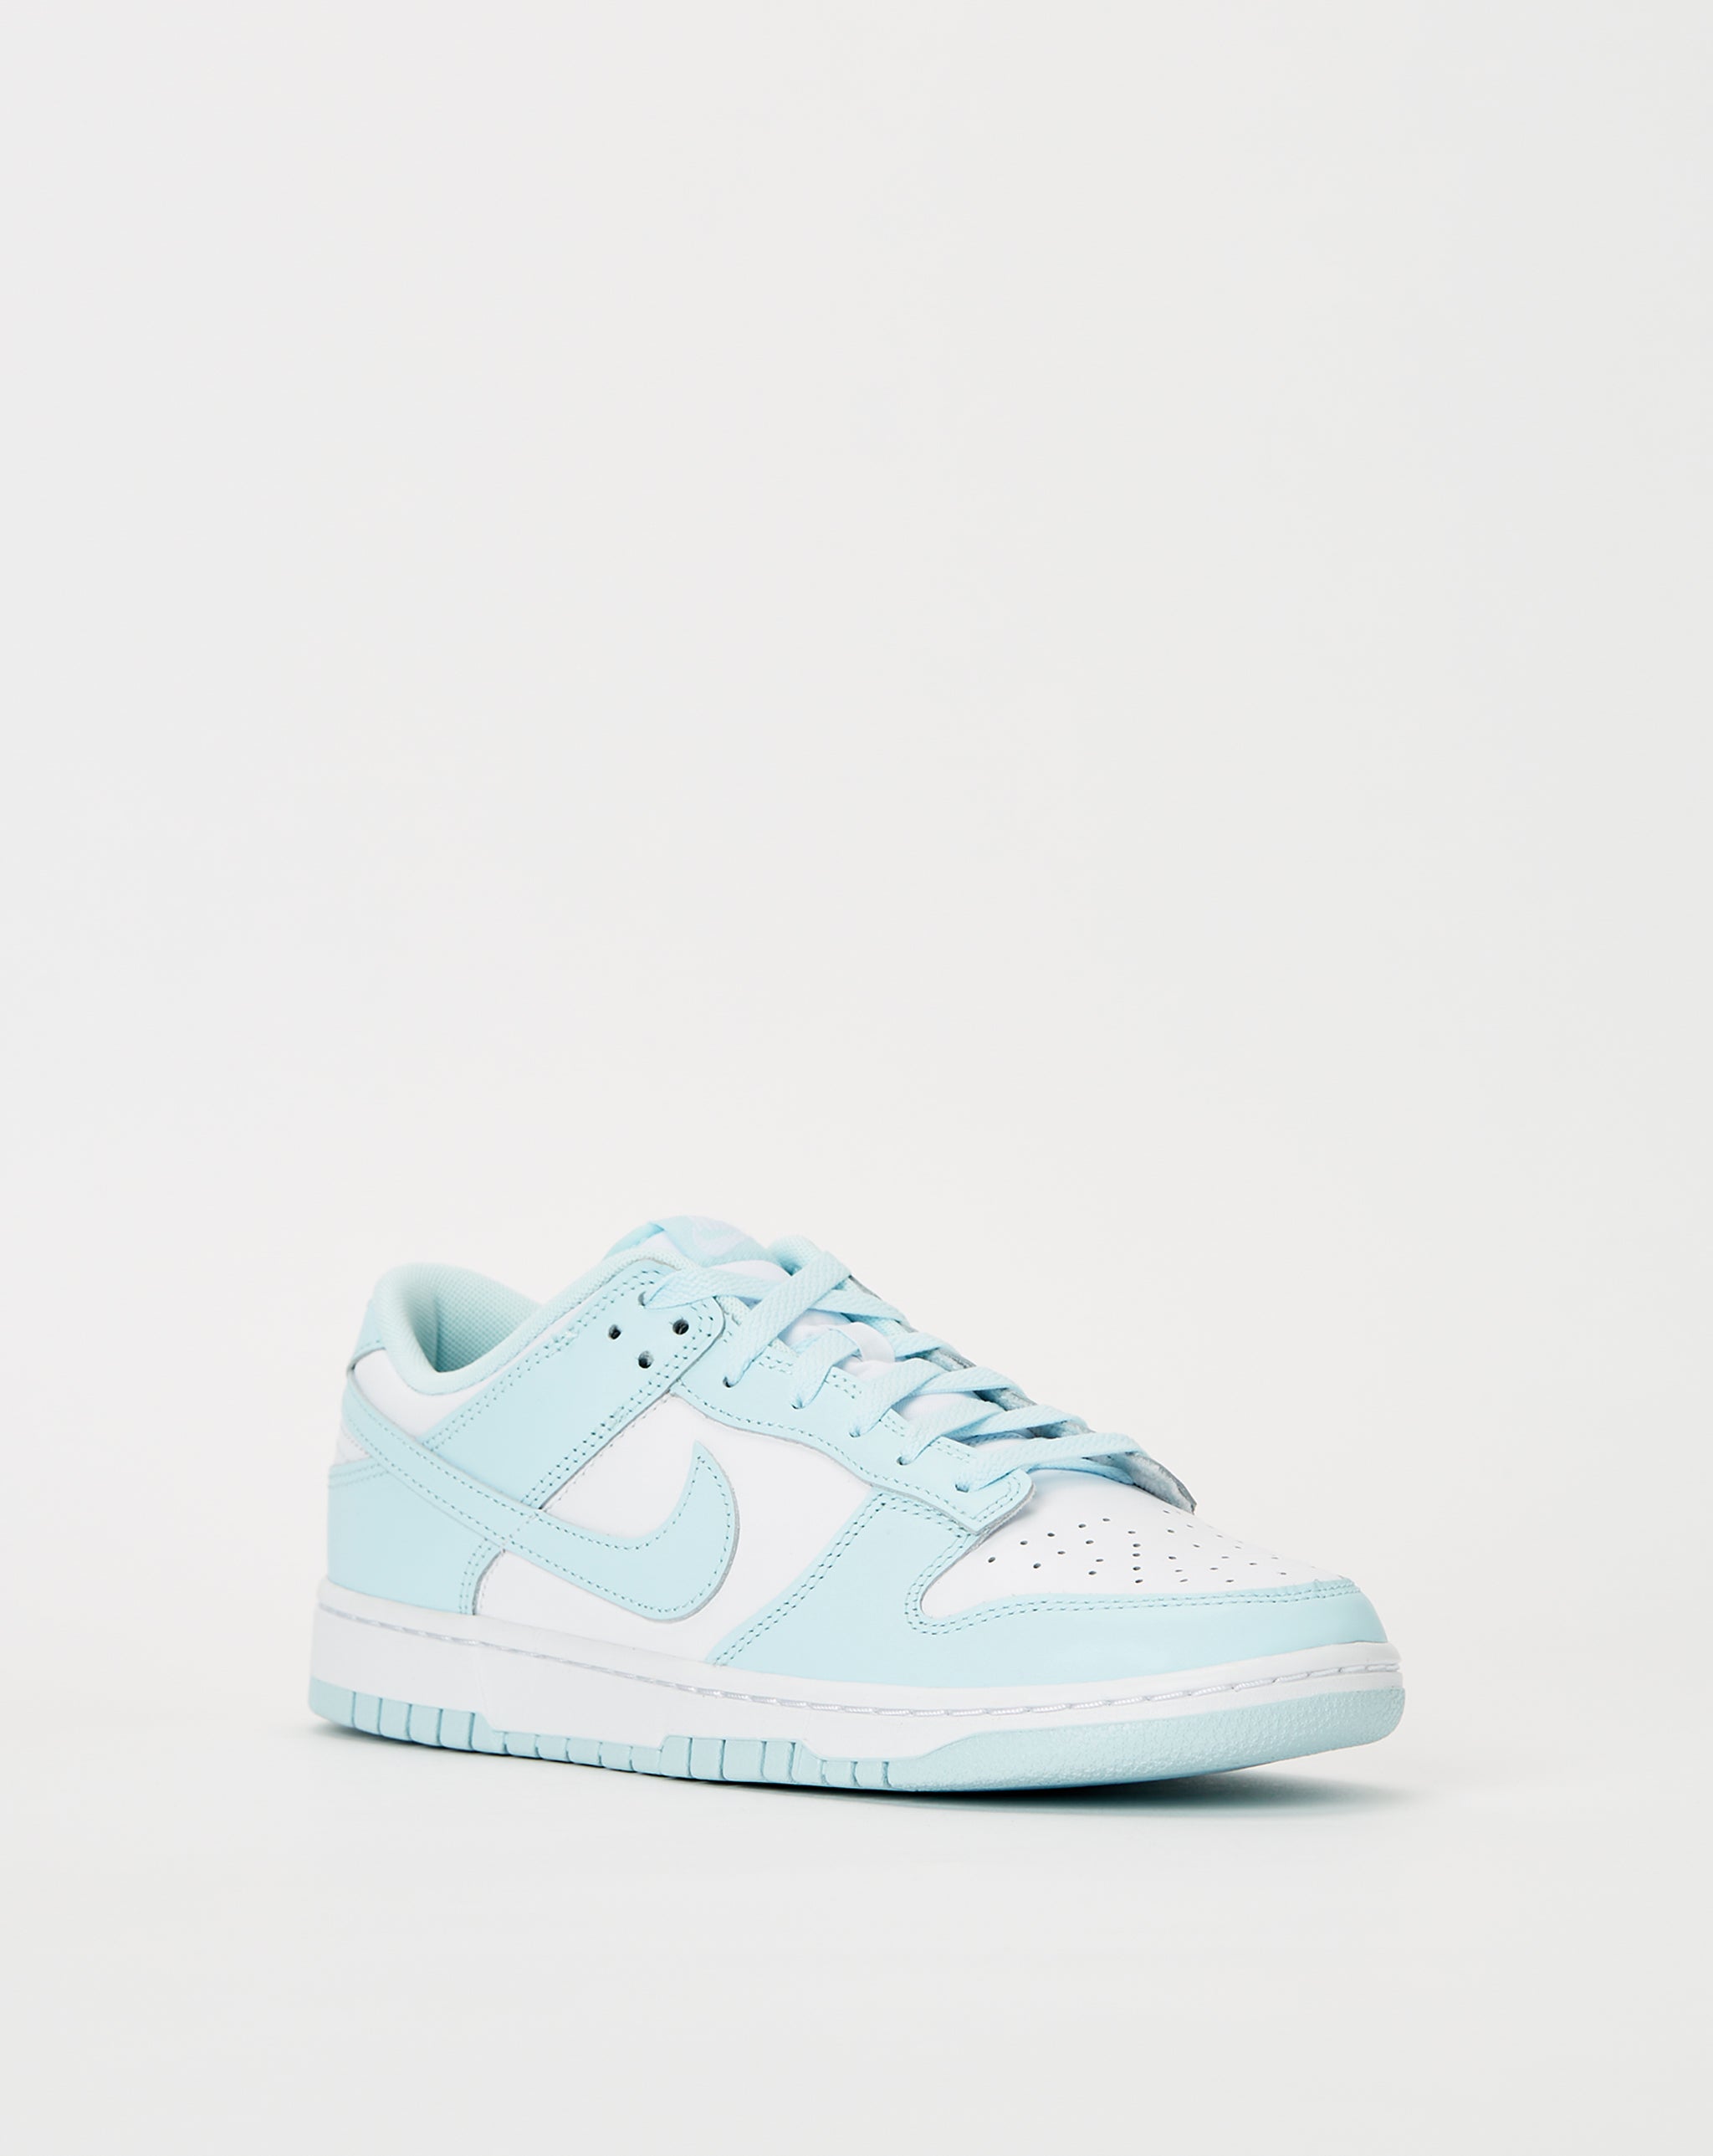 Nike Dunk Low Retro 'Glacier Blue'  - Cheap Cerbe Jordan outlet